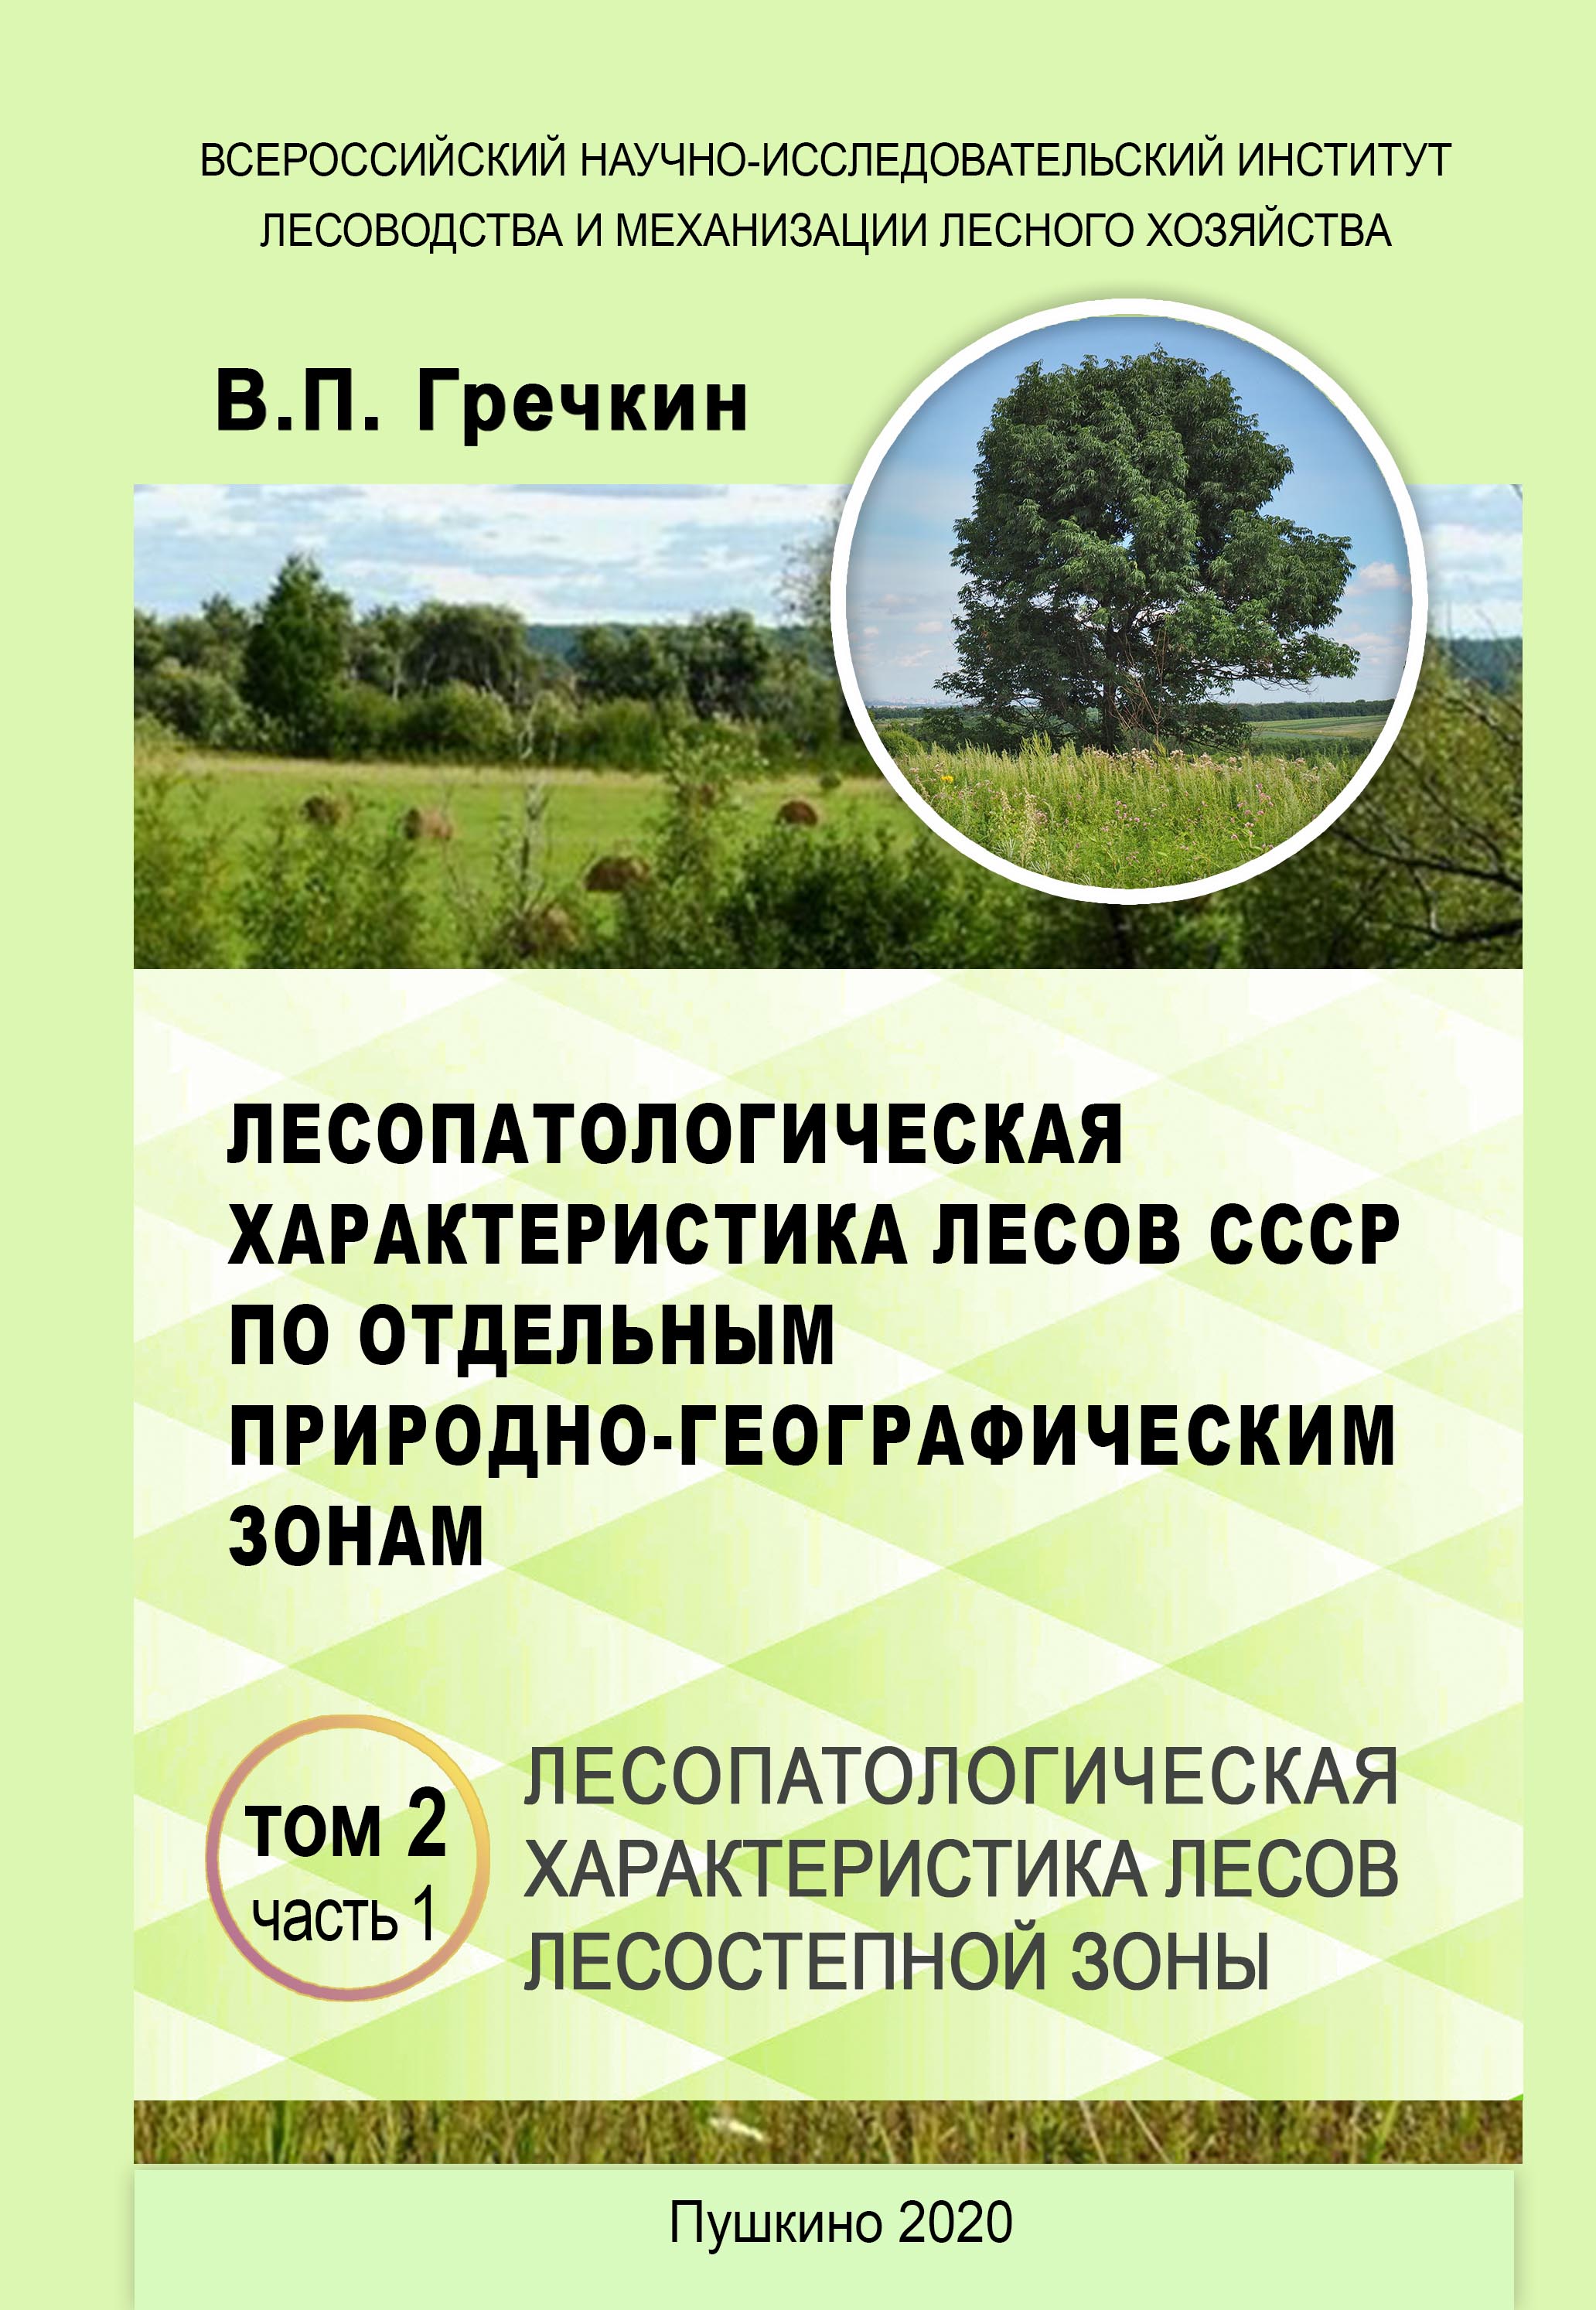 Лесопатологическая характеристика лесов СССР по отдельным природно-географическим зонам